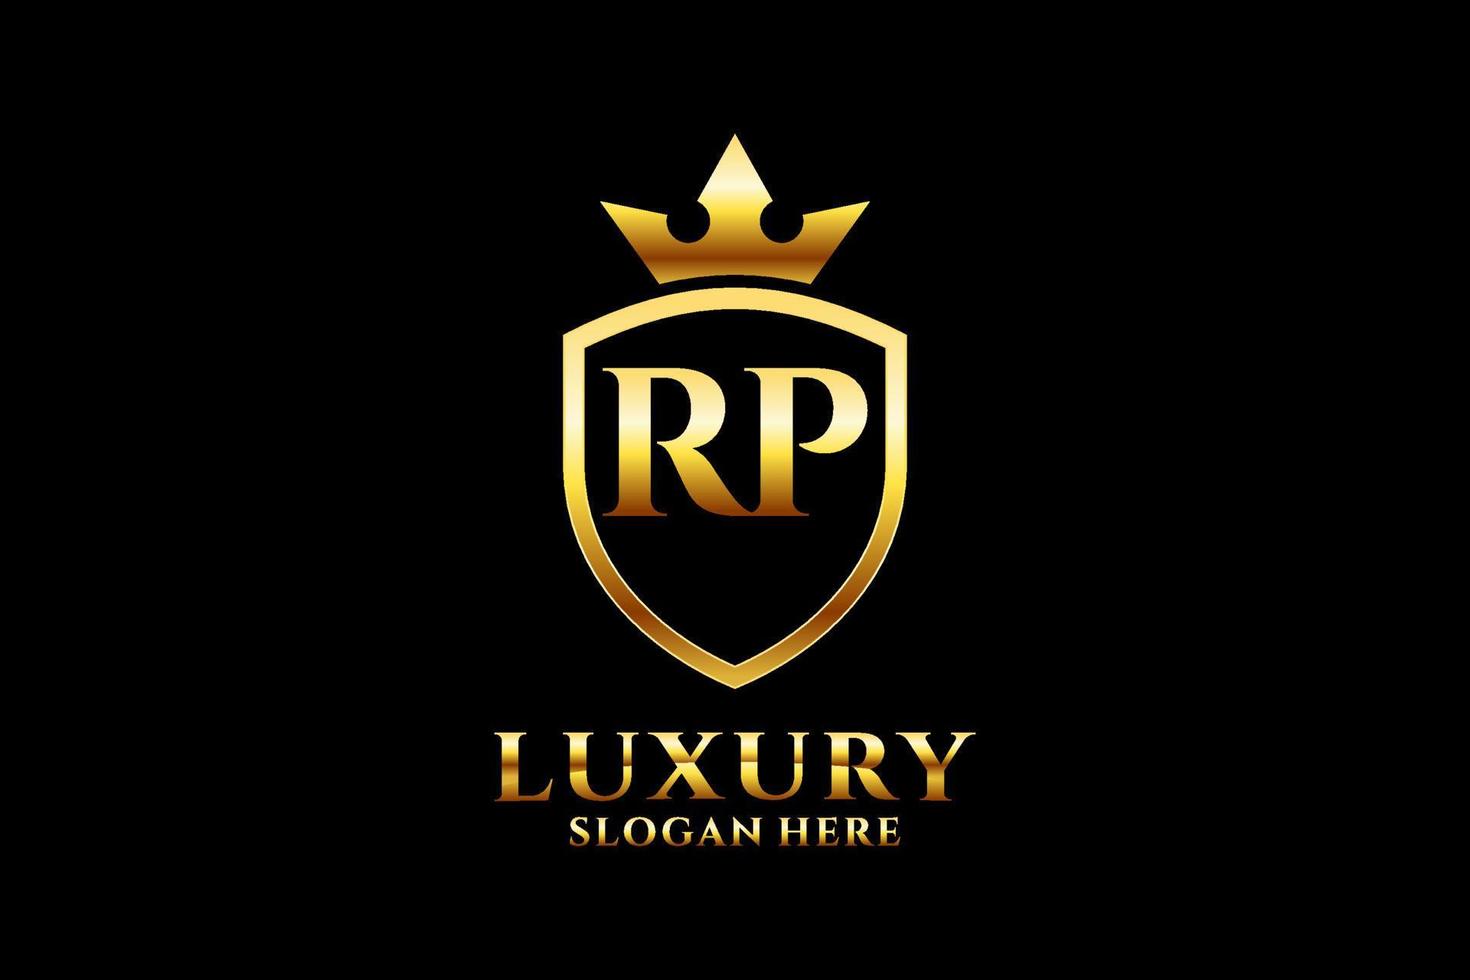 logotipo de monograma de lujo inicial rp elegante o plantilla de placa con pergaminos y corona real - perfecto para proyectos de marca de lujo vector